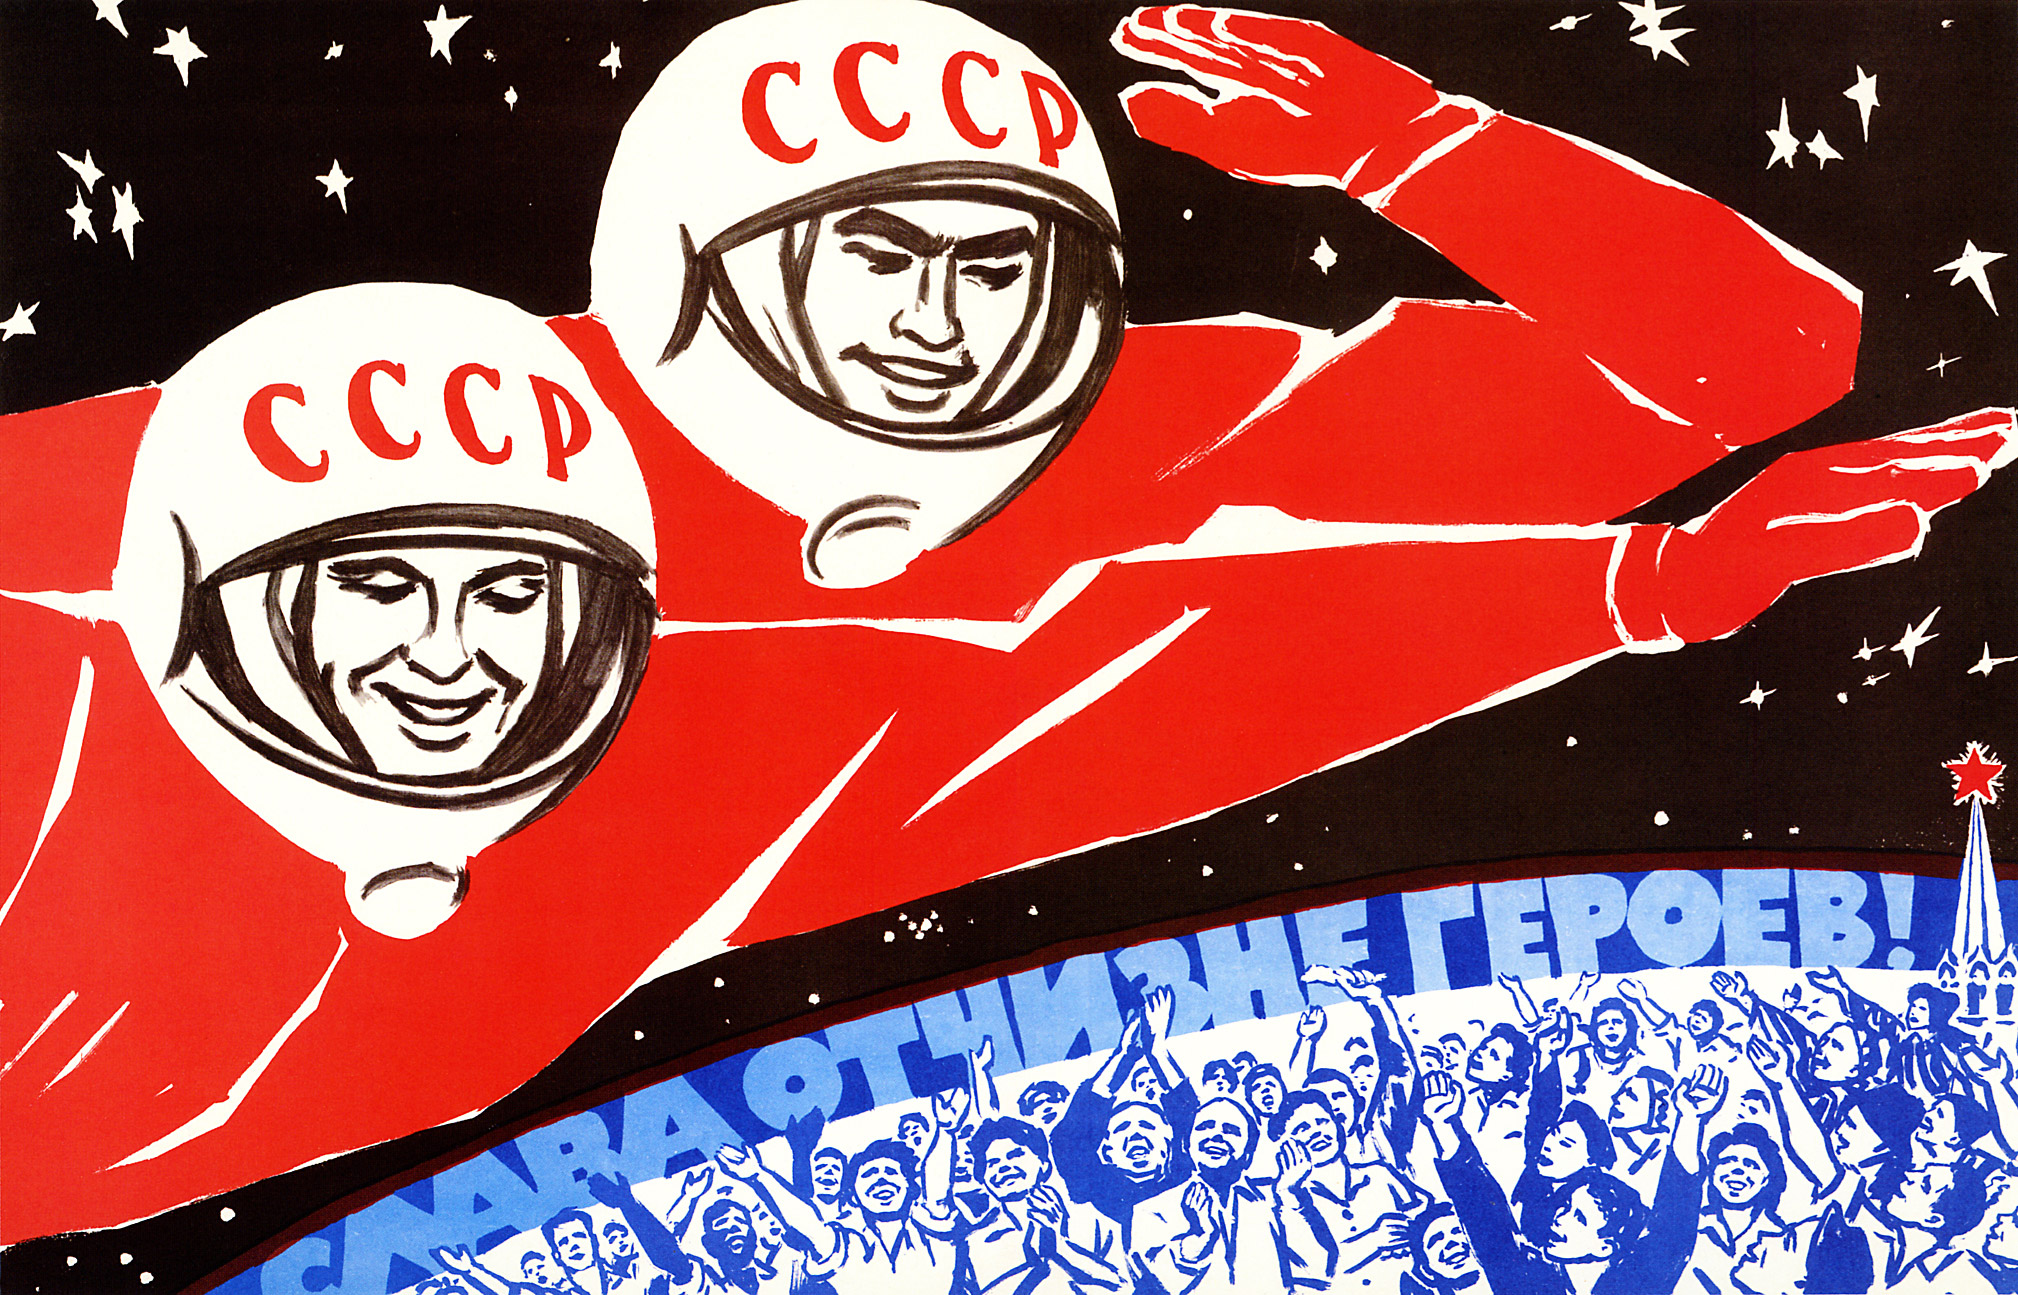 soviet-space-program-propaganda-poster-24.jpg